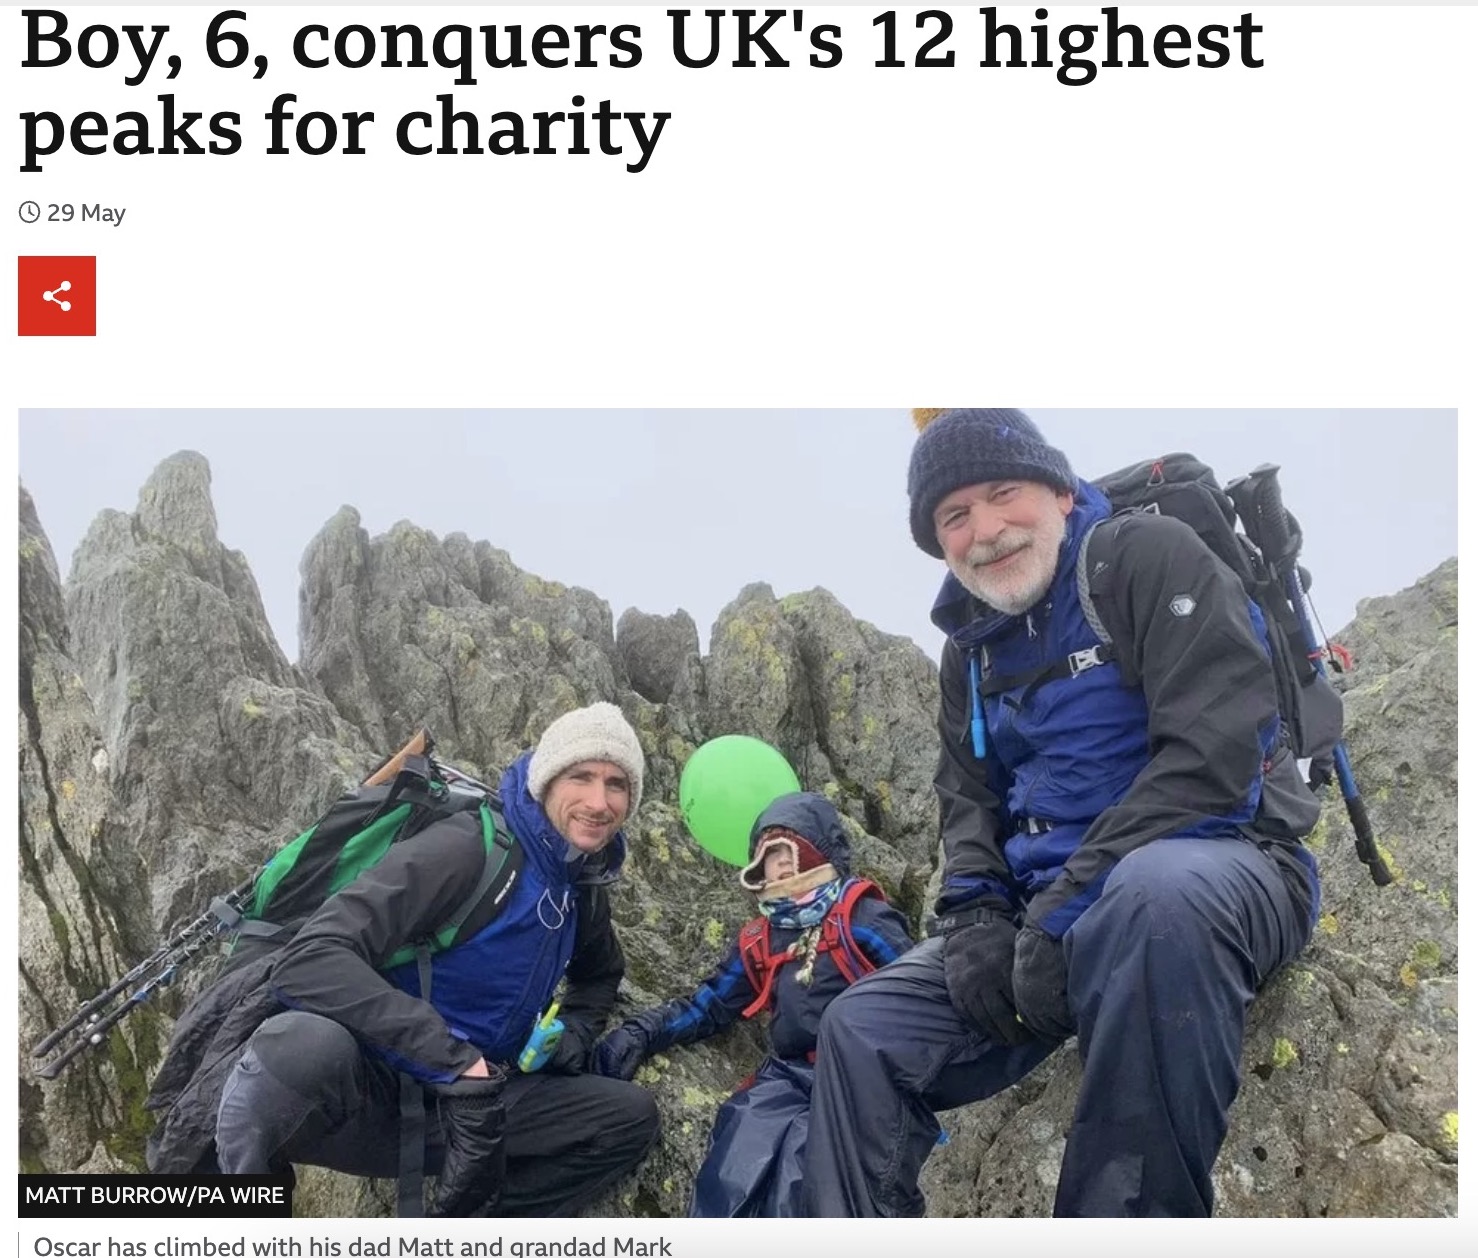 9か月の間にスコットランド、イングランド、ウェールズ最高峰を含む12の山を父親マットさん（左）と登頂したオスカー君。時には祖父マークさん（右）も同行したという（画像は『BBC　2023年5月29日付「Boy, 6, conquers UK’s 12 highest peaks for charity」（MATT BURROW/PA WIRE）』のスクリーンショット）